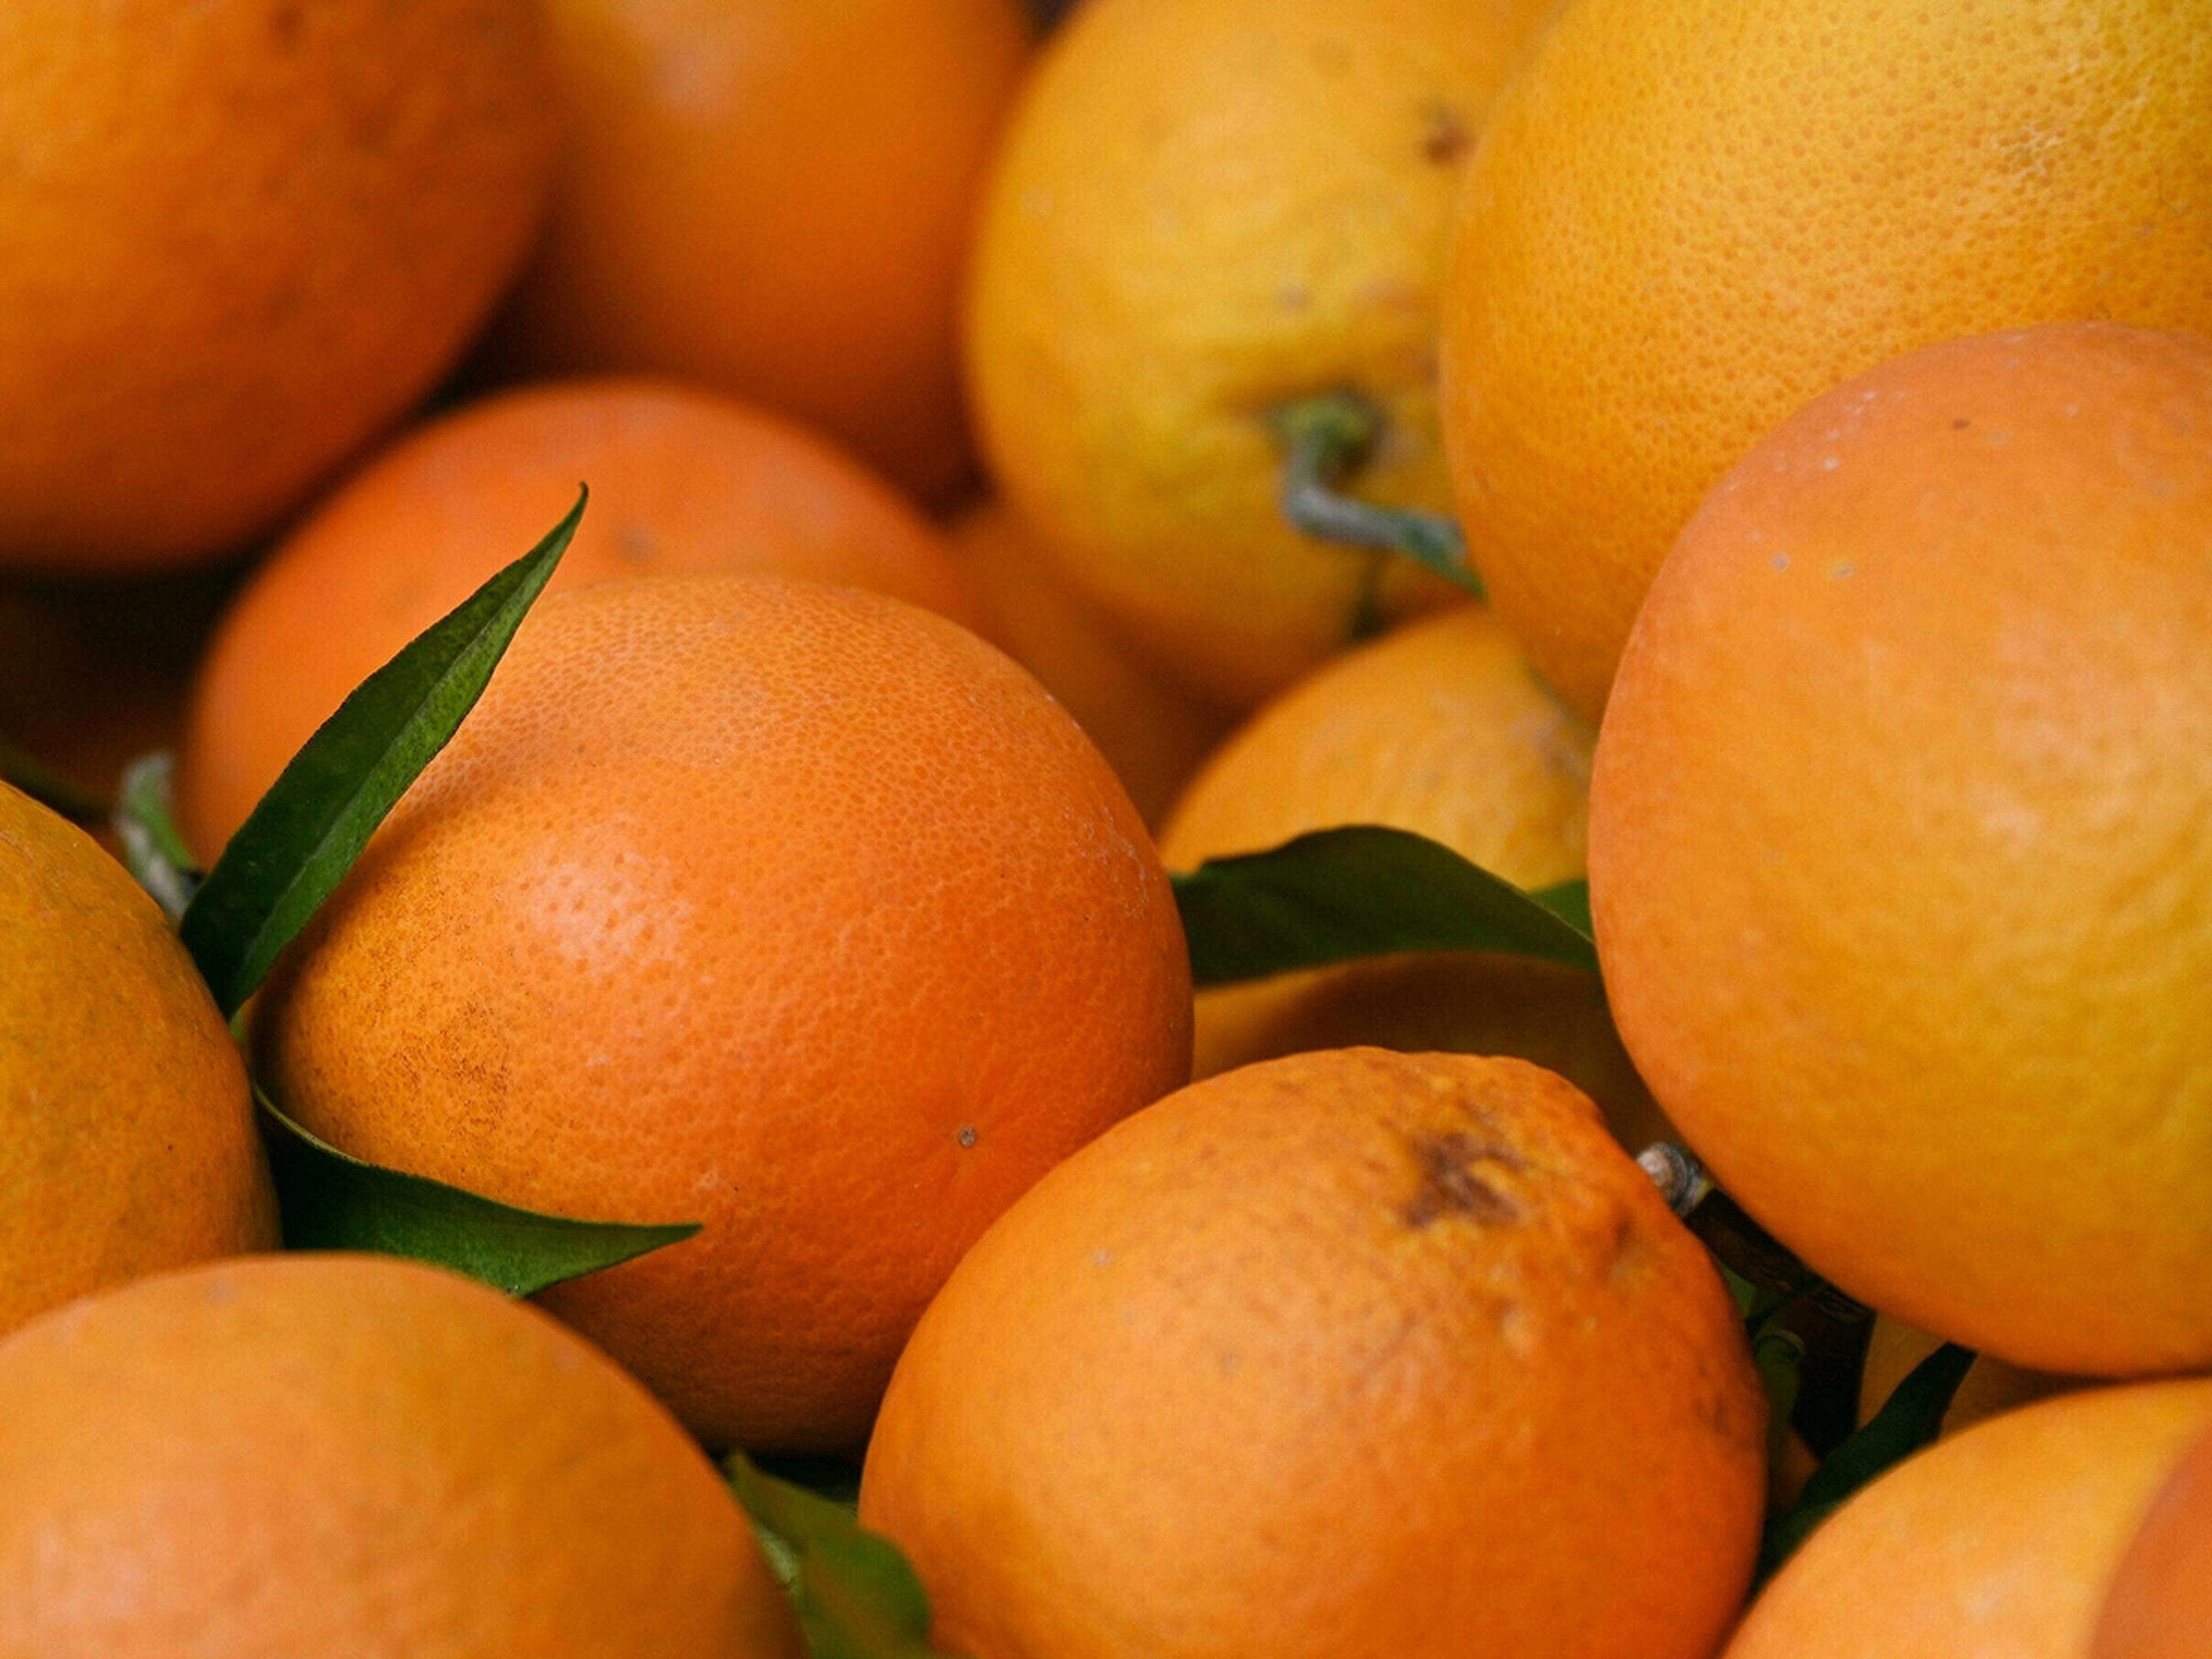 Orangen (Apfelsinen): in Wahrheit sind sie grün